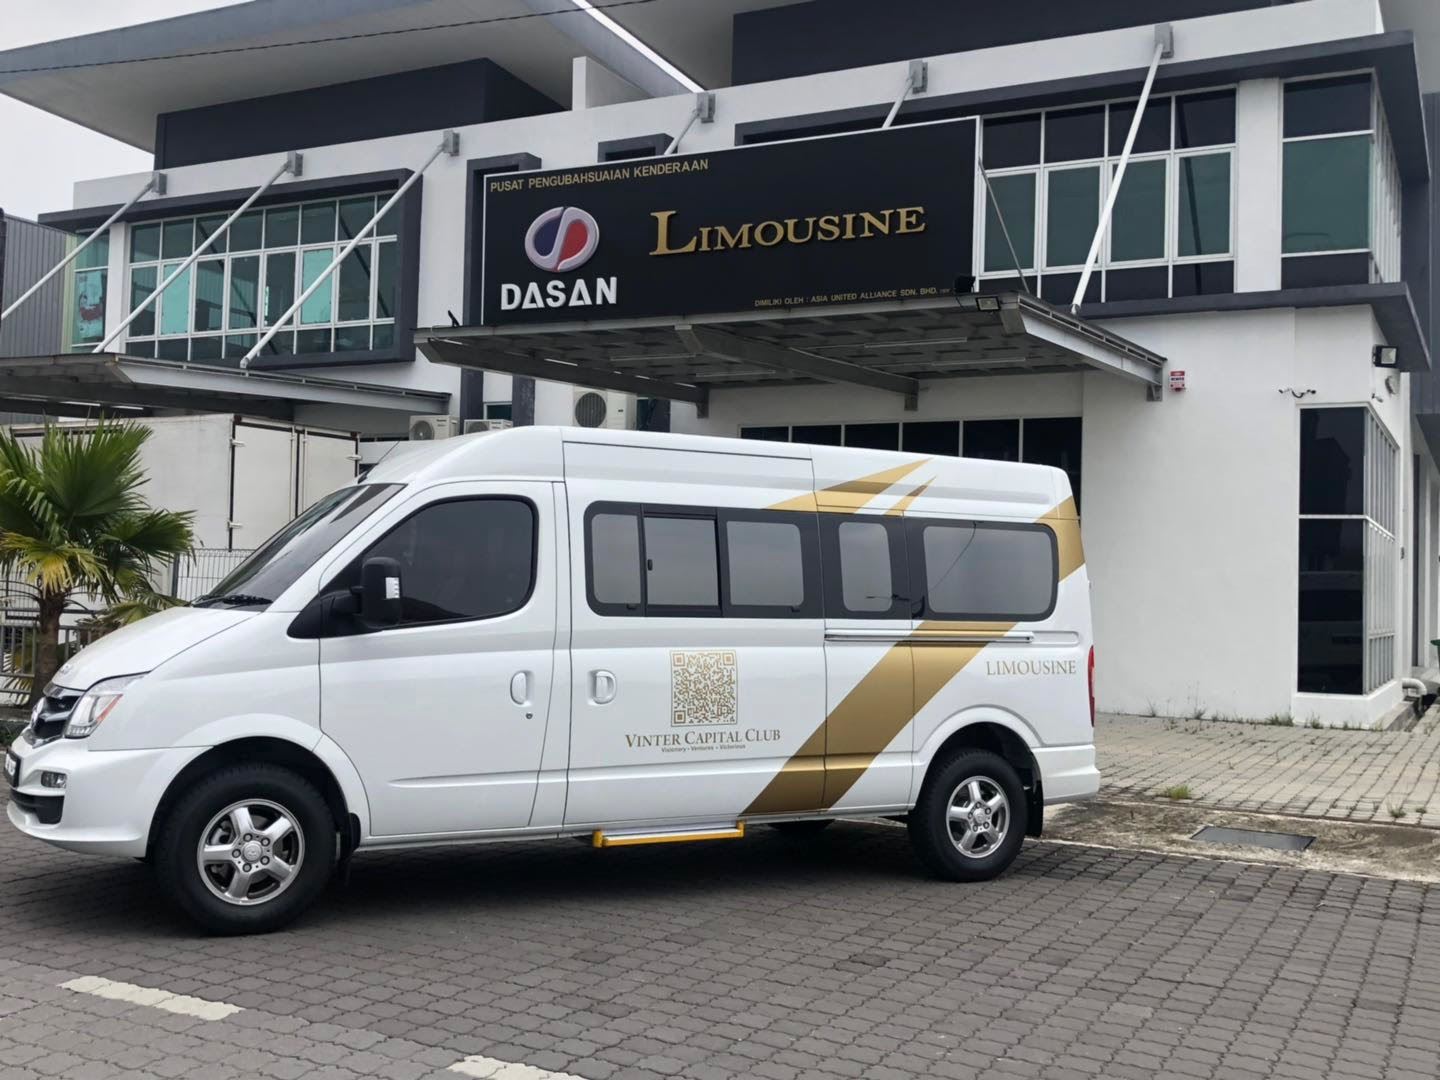 xe limousine Dasan xuất khẩu sang Asean